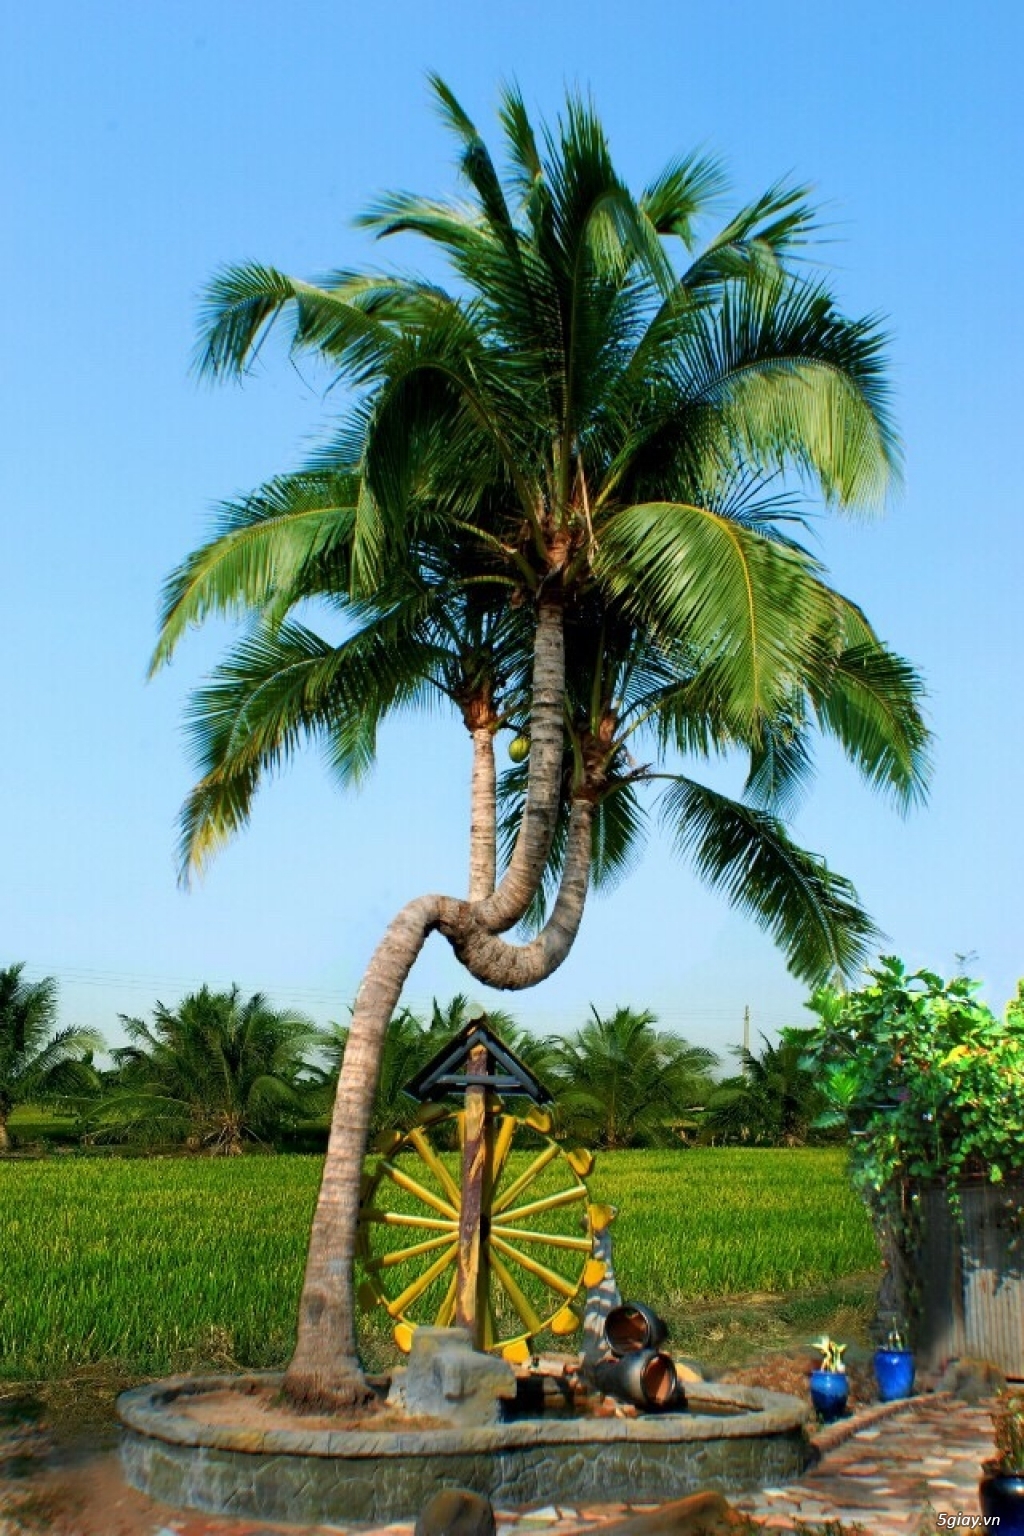 Hình ảnh cây dừa 3 ngọn cực độc, cực lạ